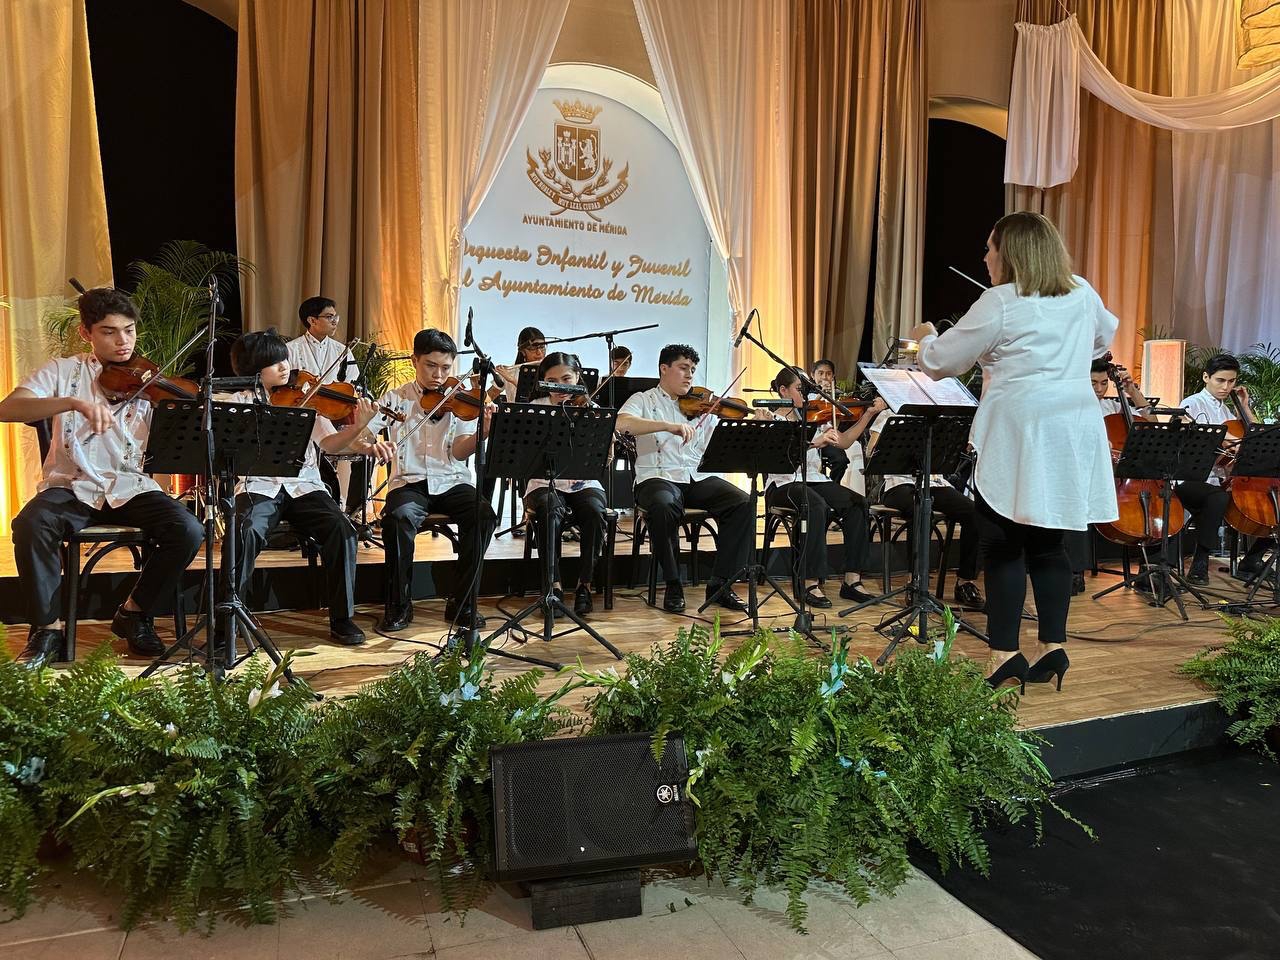 Debuta la orquesta infantil y juvenil del Ayuntamiento de Mérida